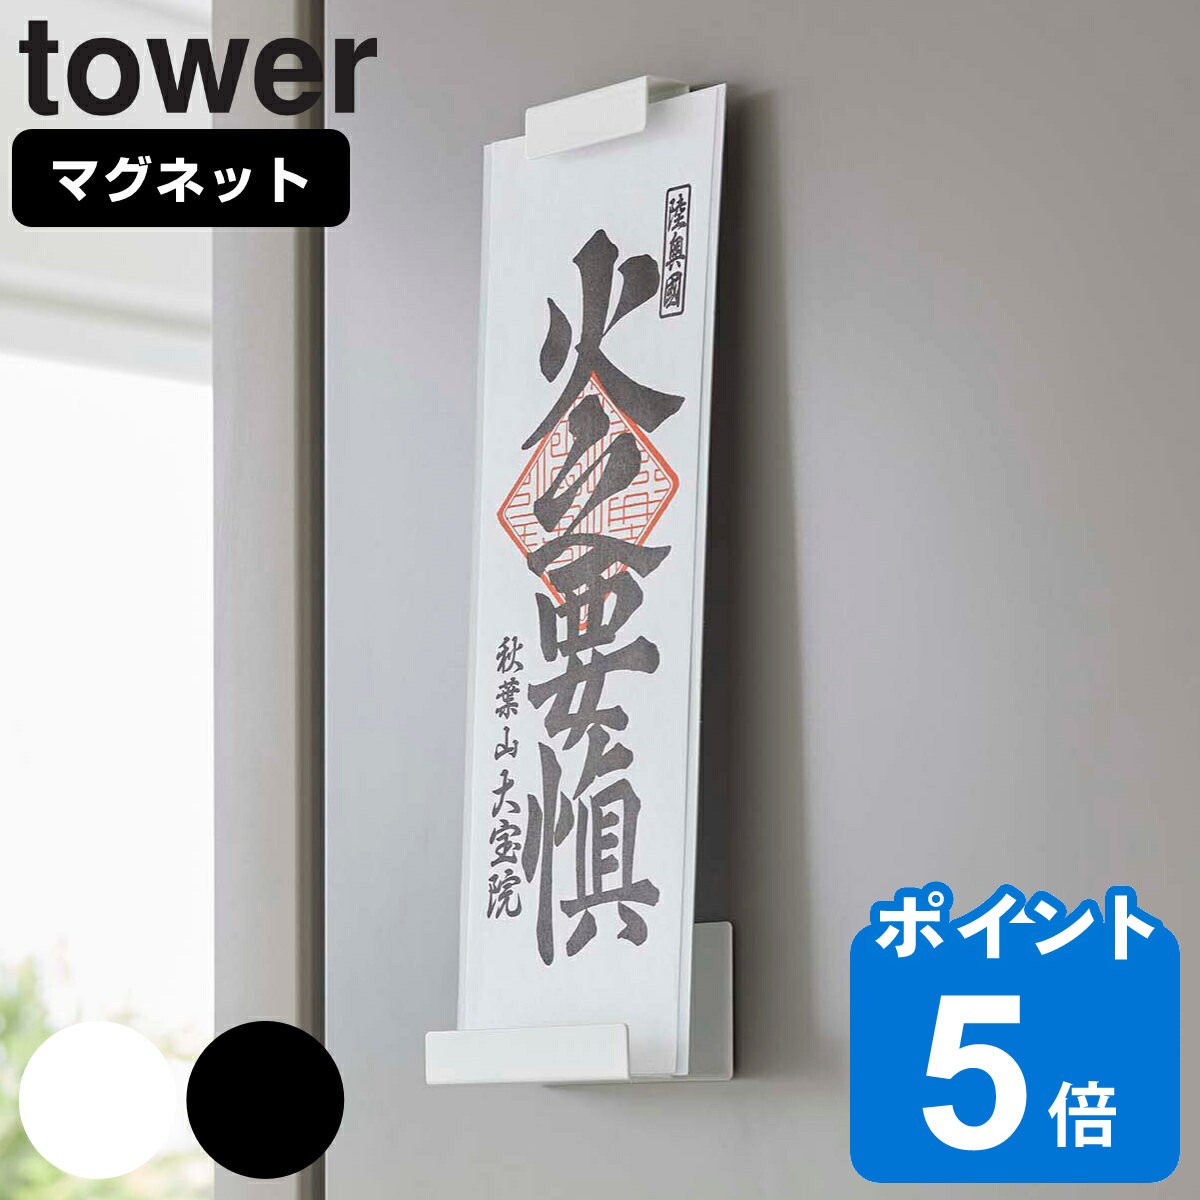 tower }Olbg_Dz_[ ^[ VO